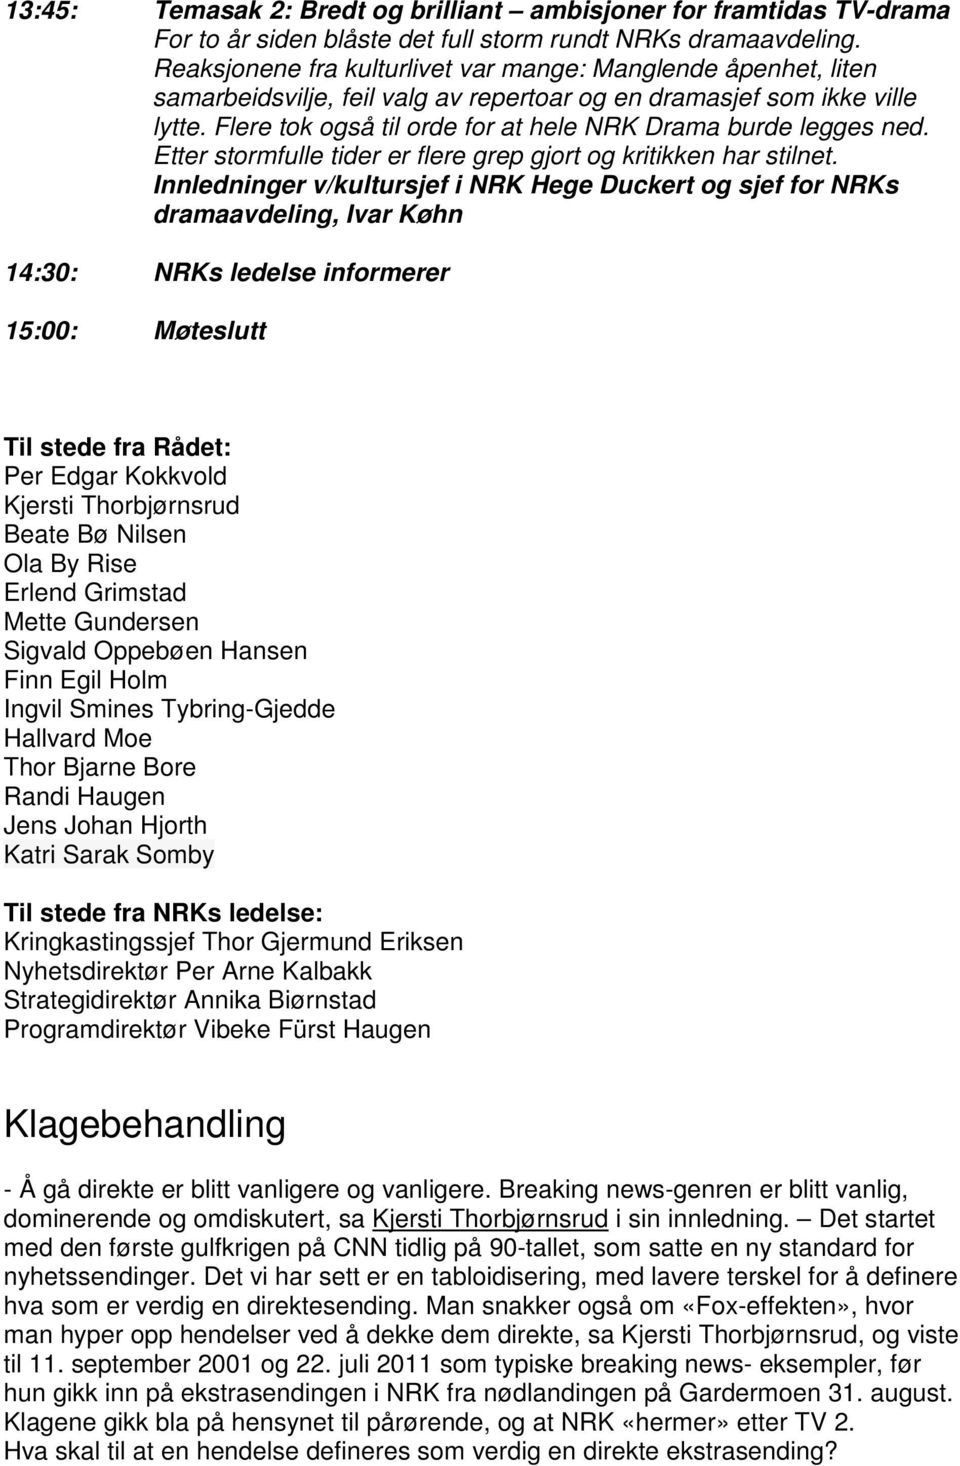 Flere tok også til orde for at hele NRK Drama burde legges ned. Etter stormfulle tider er flere grep gjort og kritikken har stilnet.